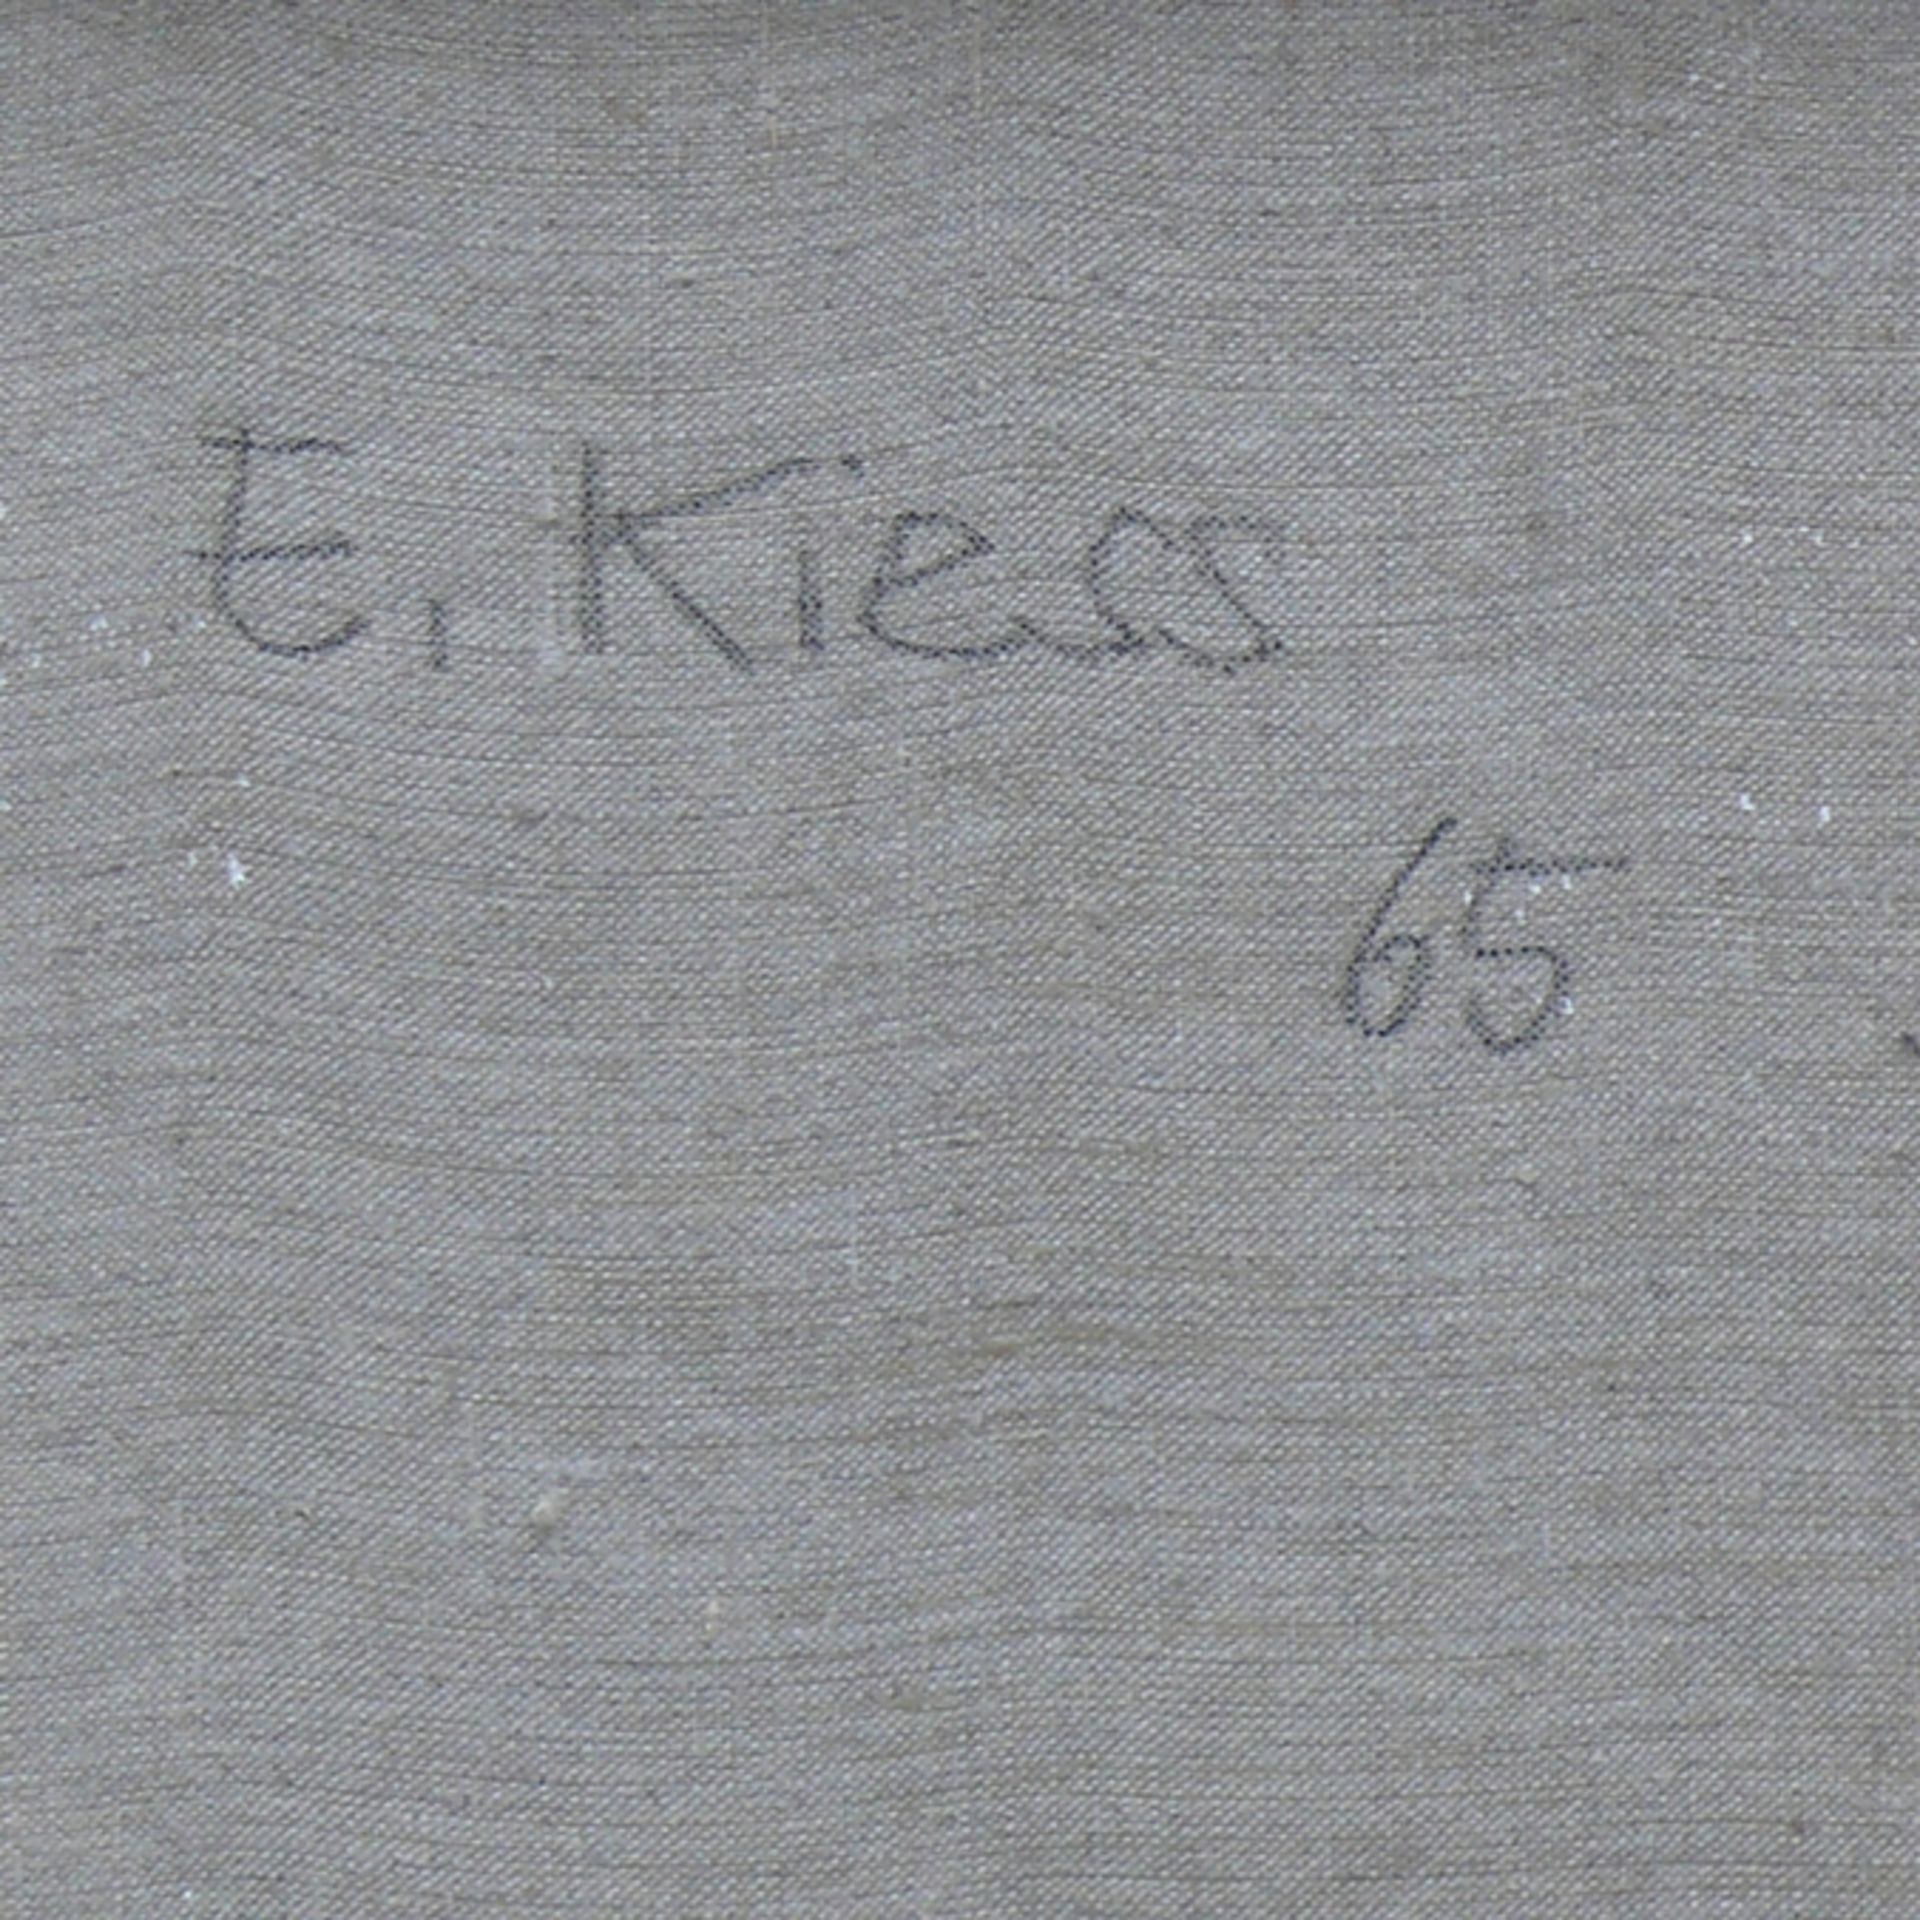 Kiess, Emil (geb. Trossingen 1930) - Image 3 of 4